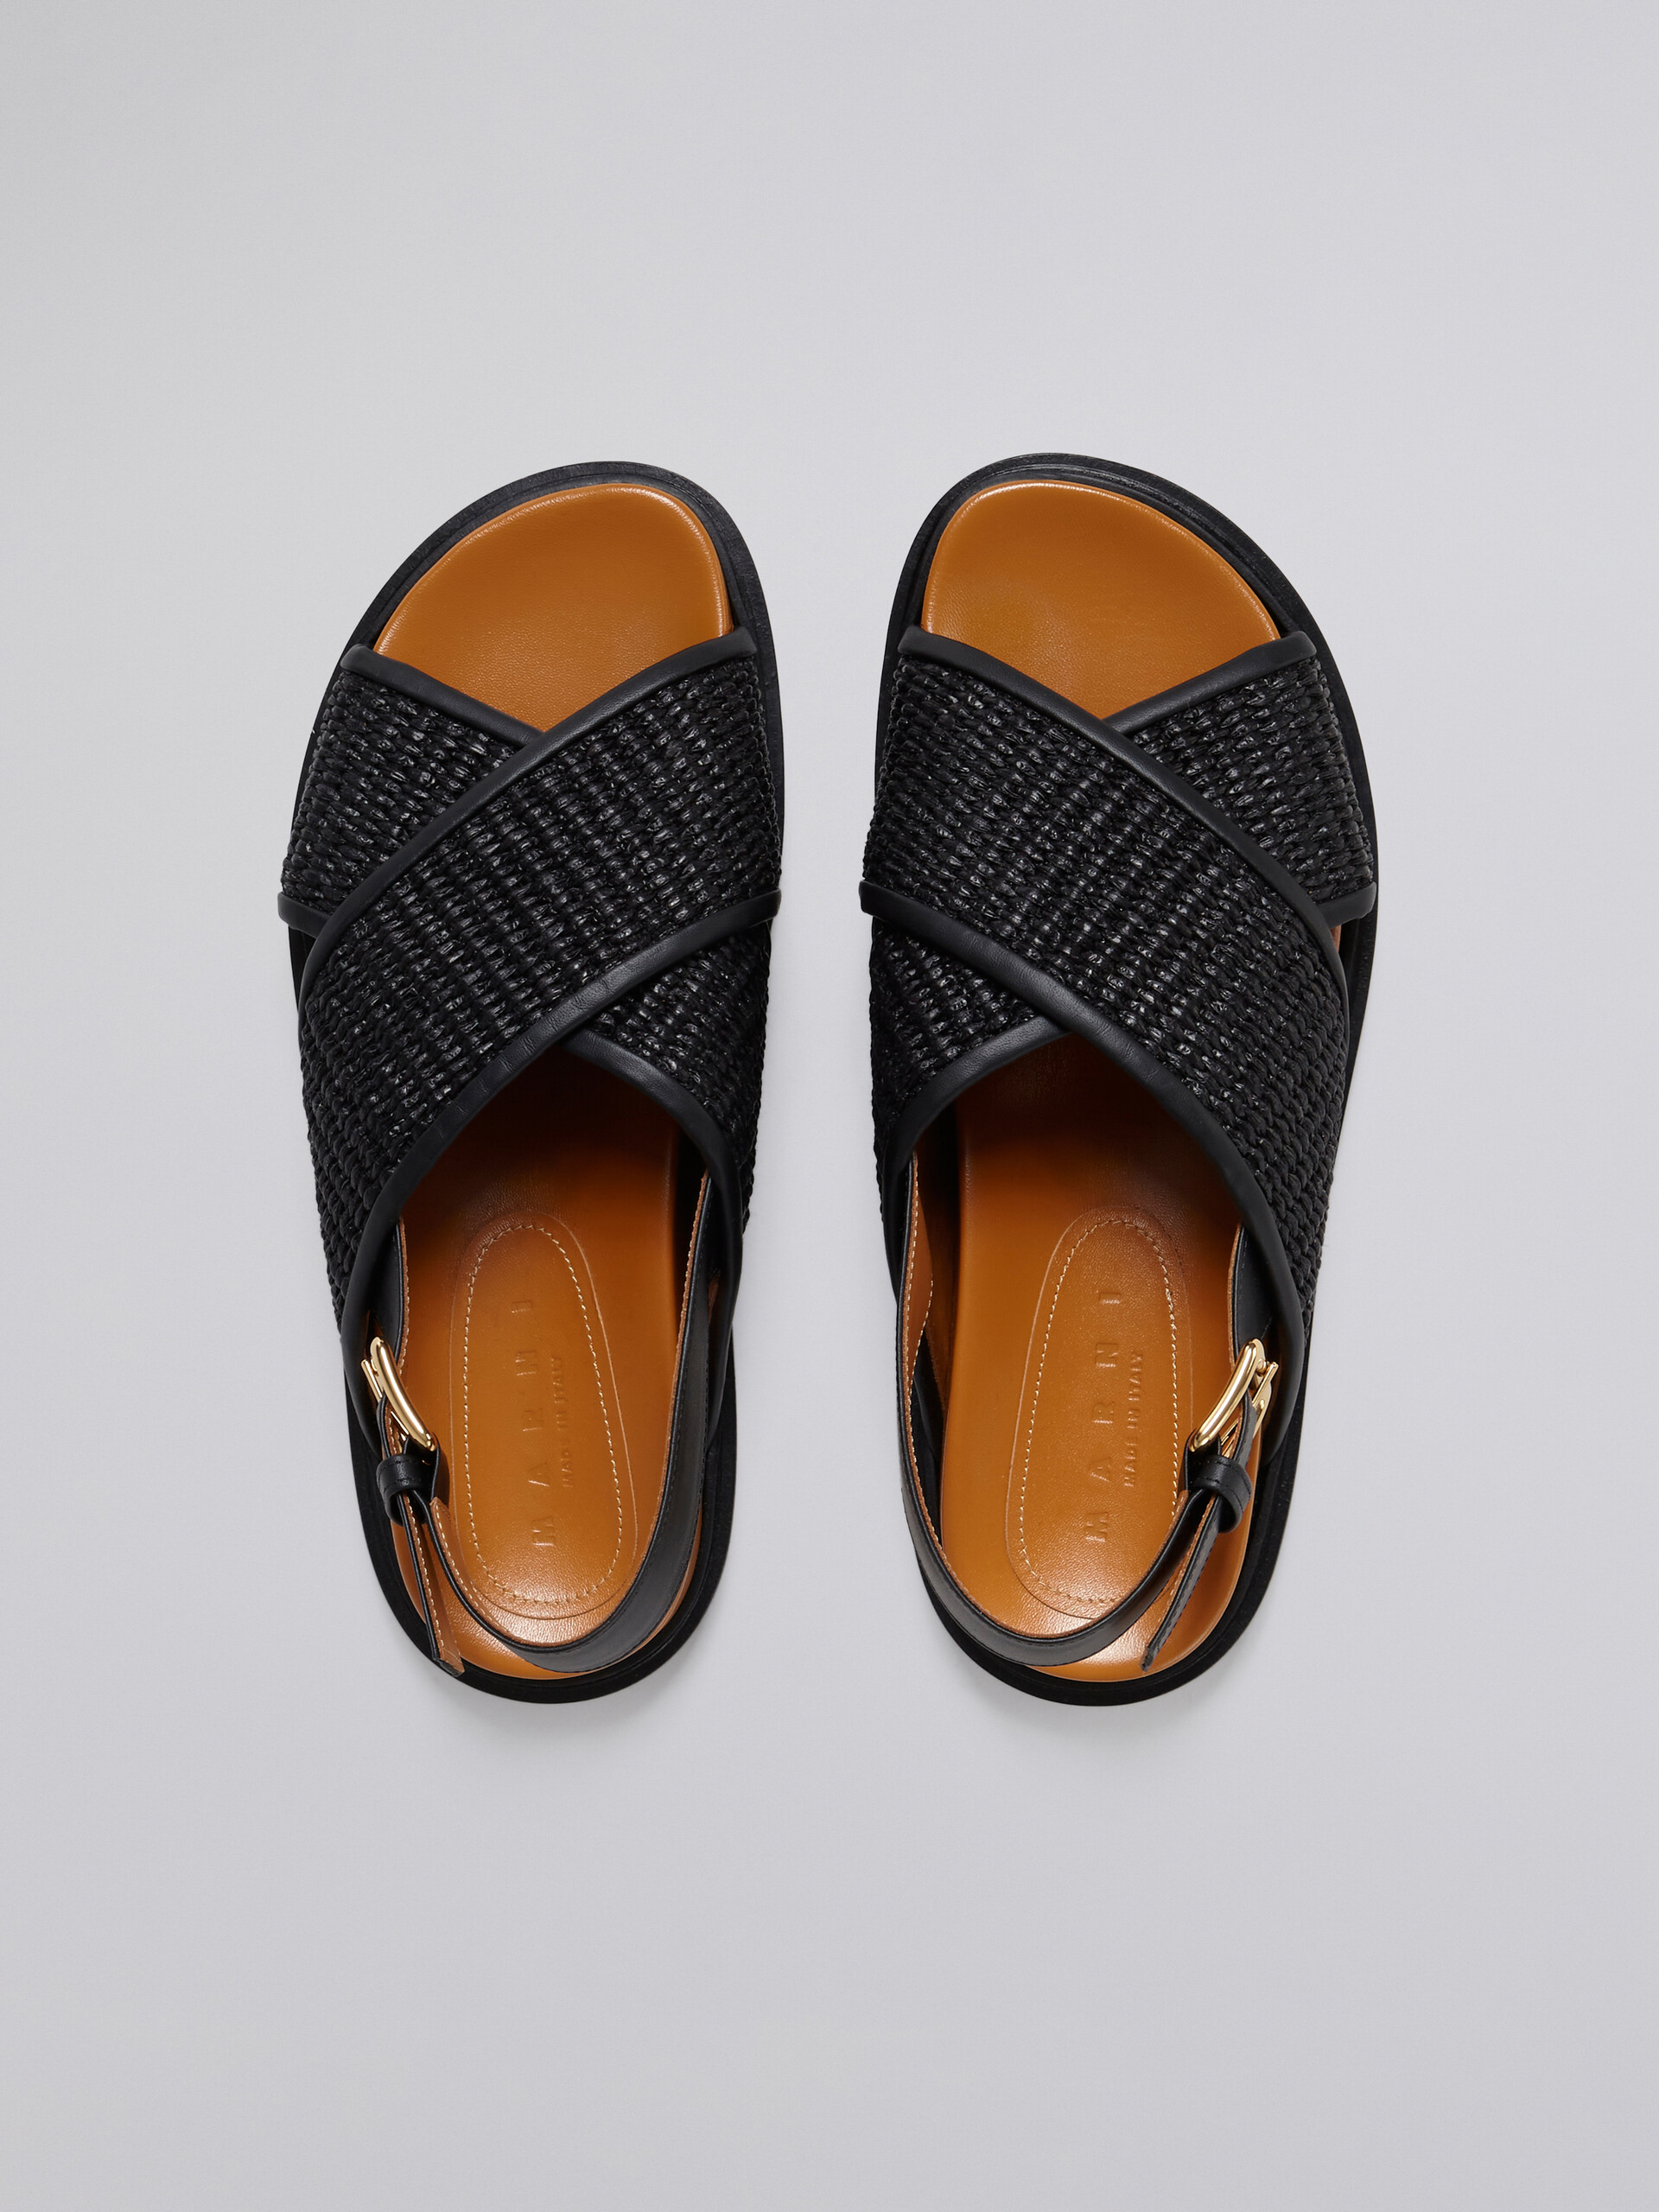 블랙 라피아 및 가죽 퍼스베트 - Sandals - Image 4